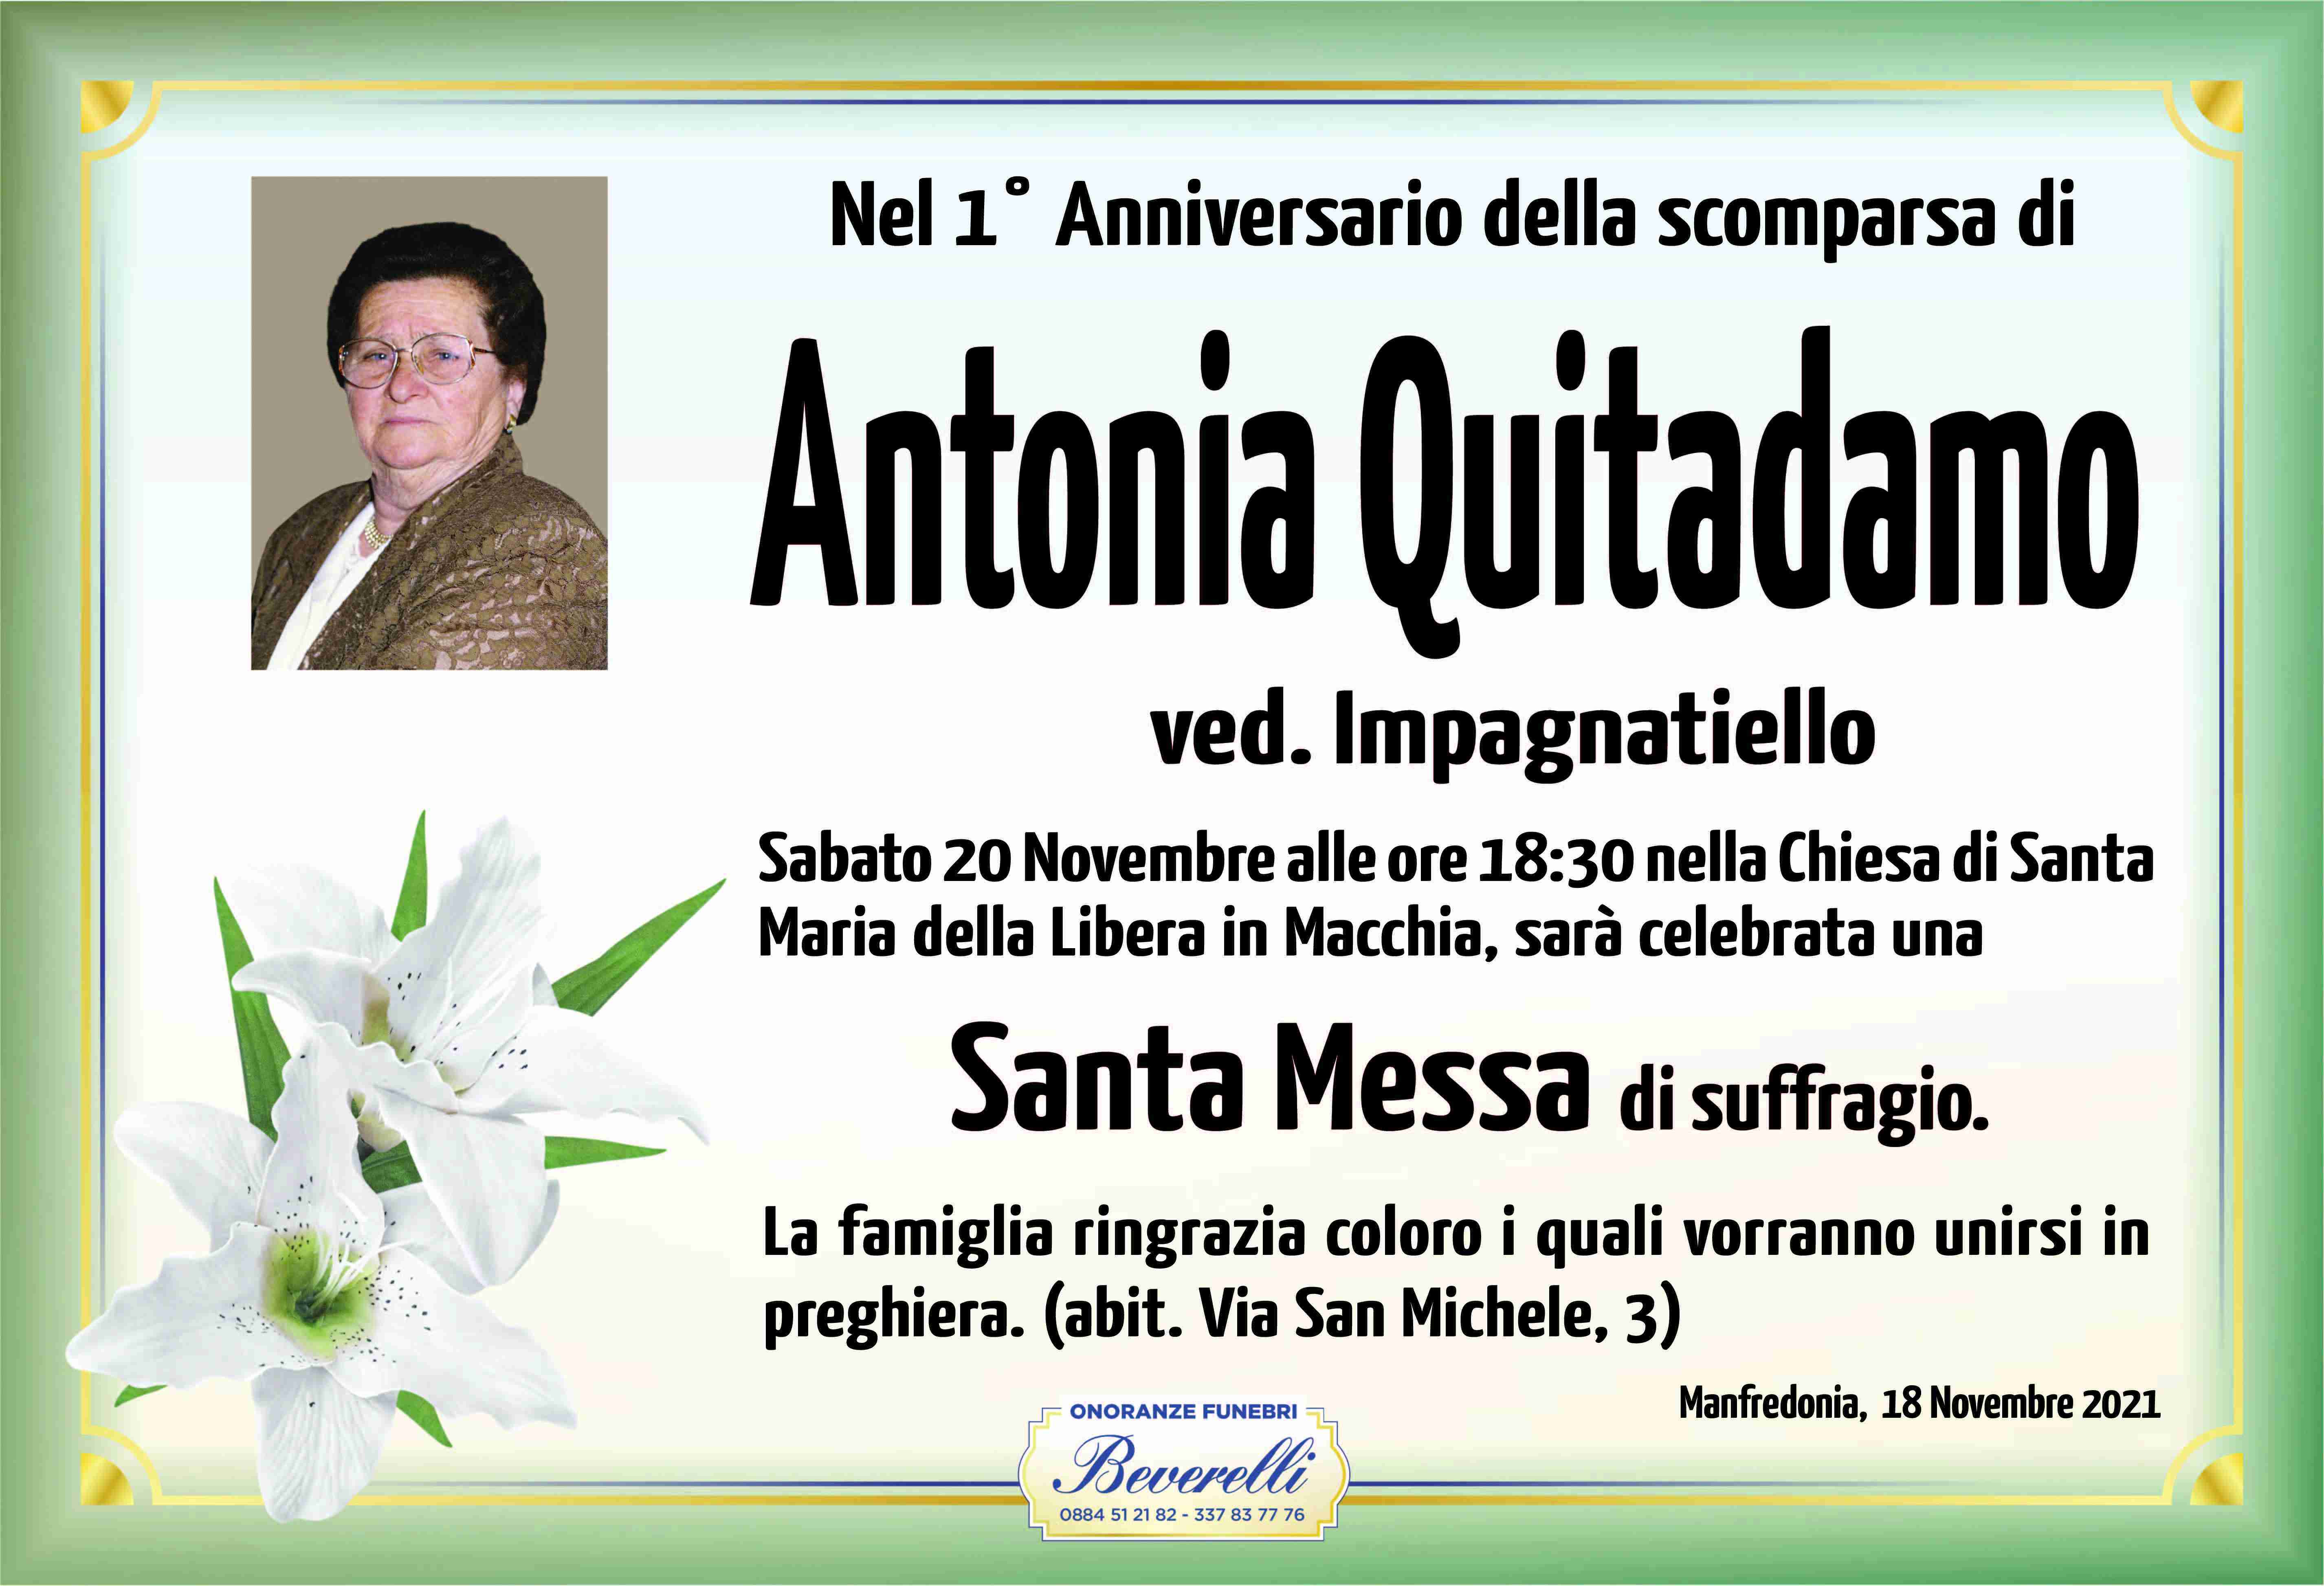 Antonia Quitadamo